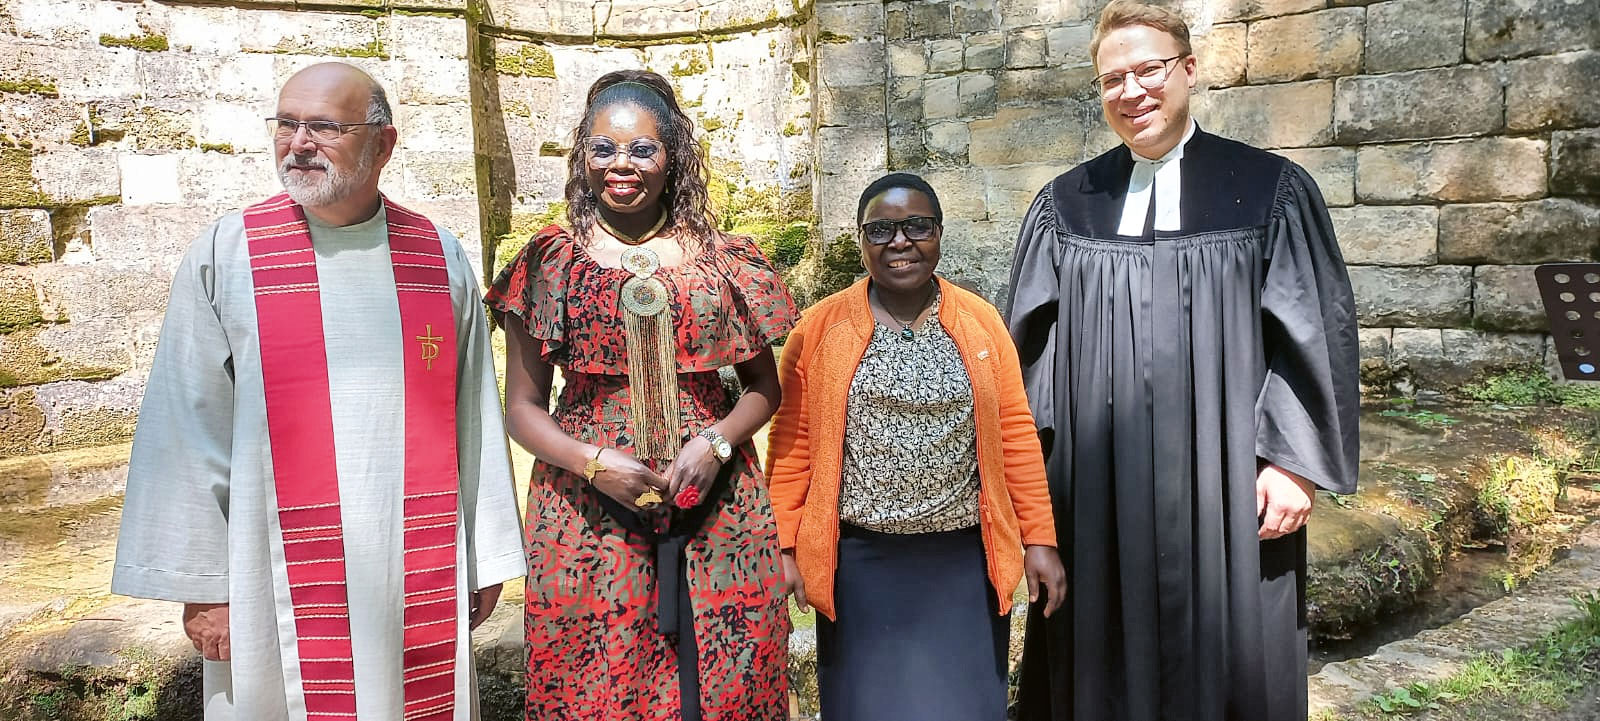 Diakon Tischer und Pfarrer Schwarz mit den Gästen aus Afrika